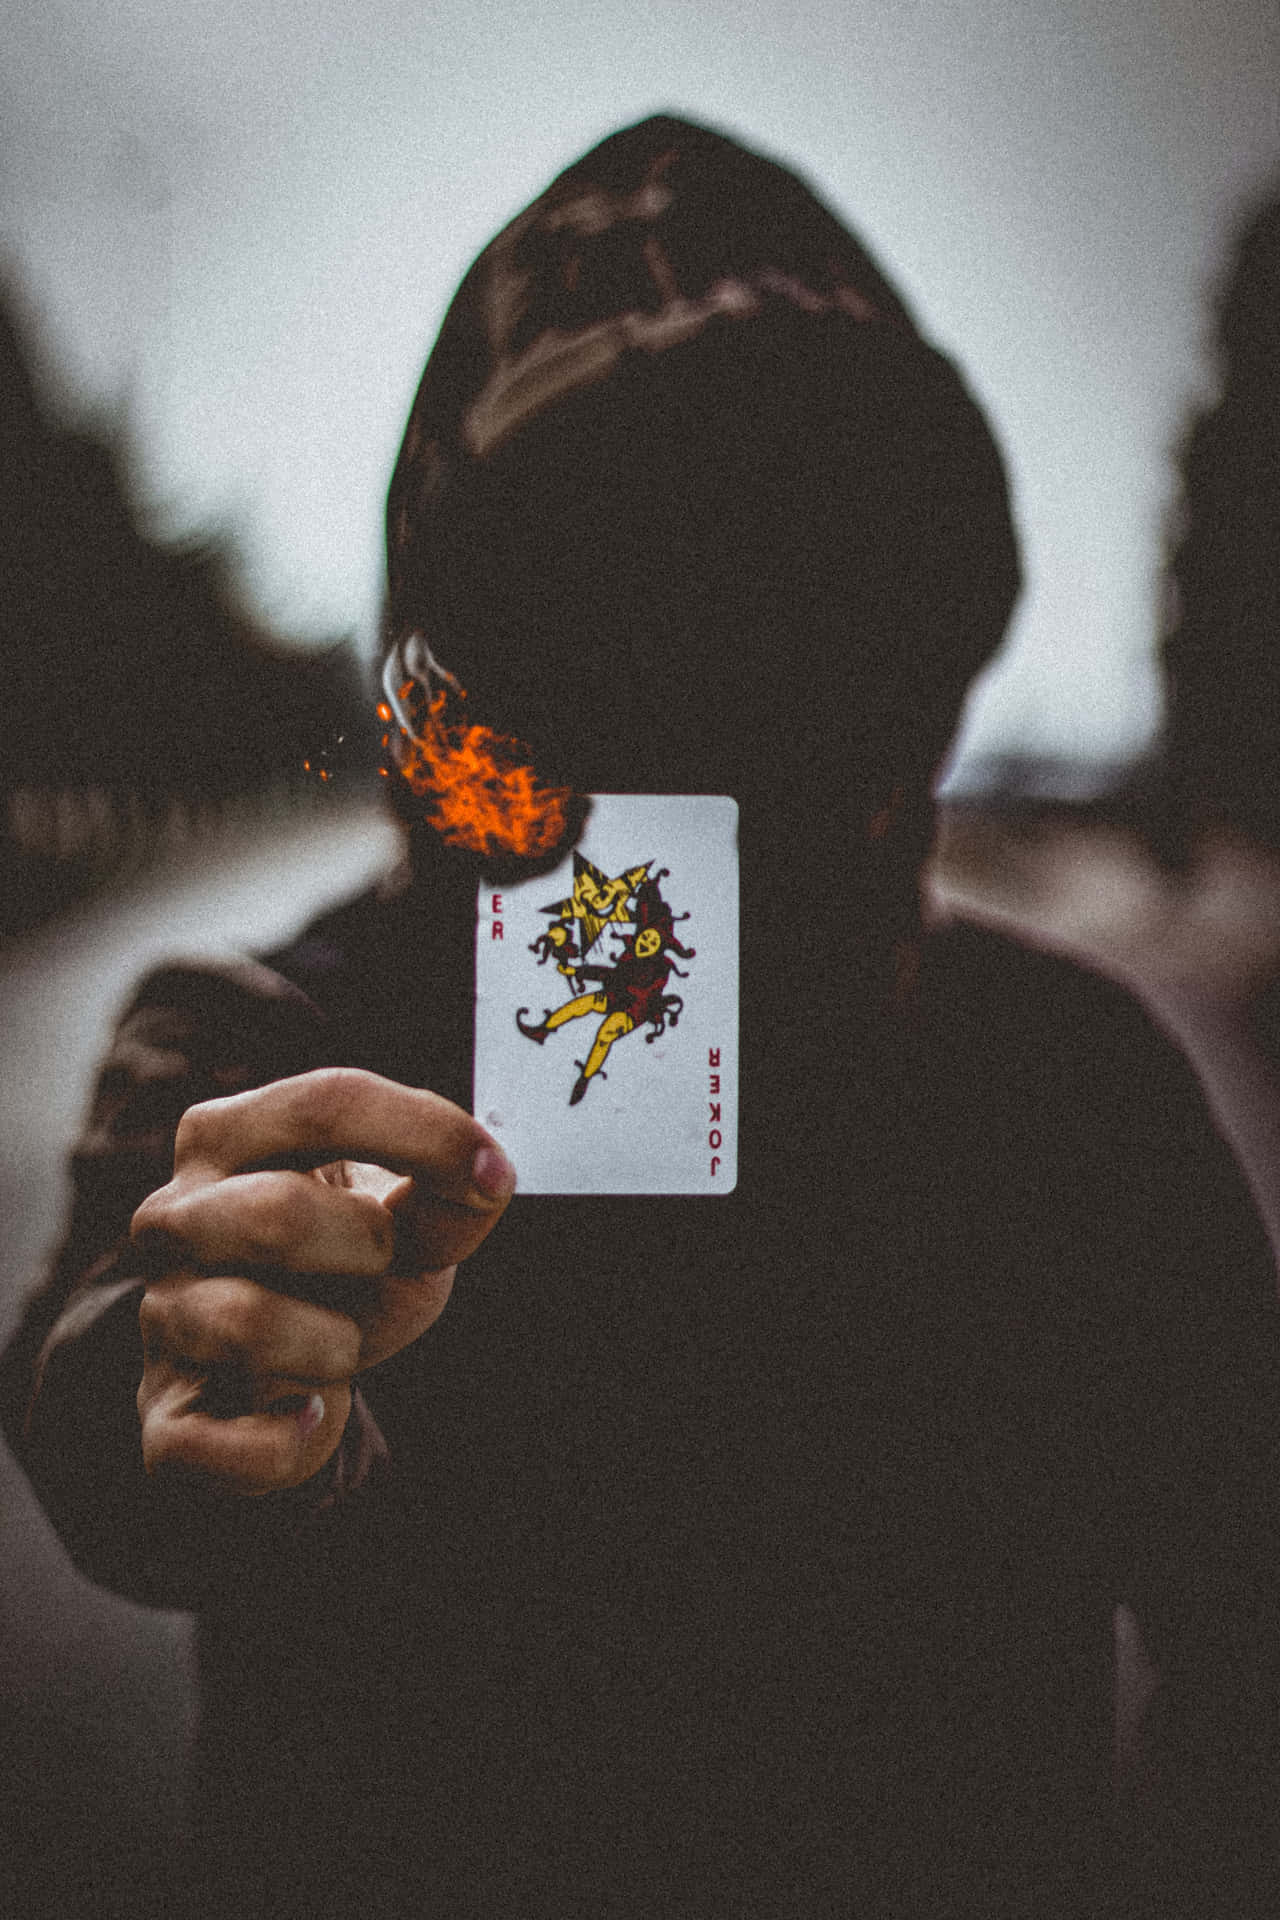 Cool Joker Card On Fire